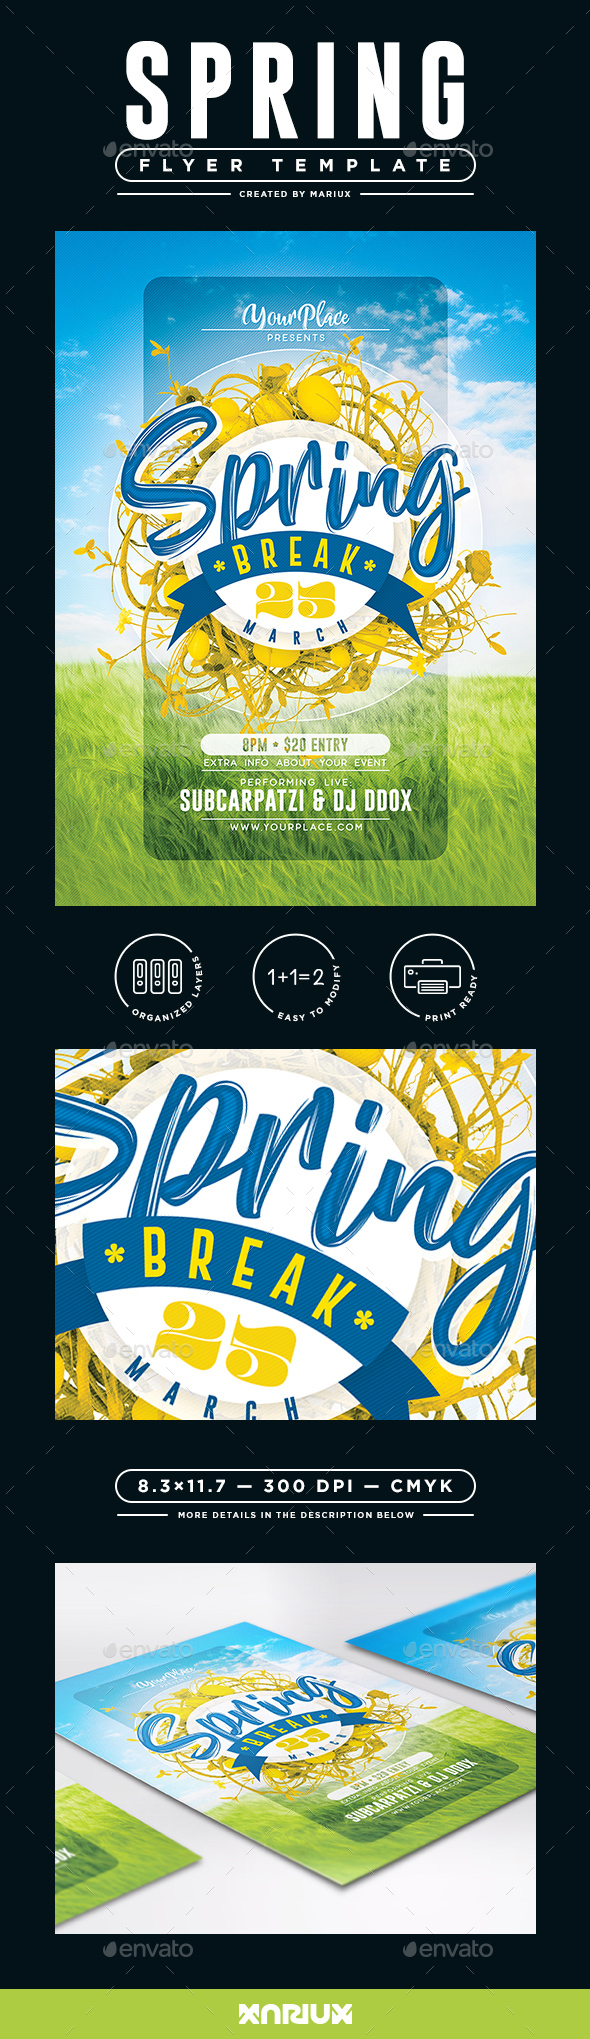 Spring Break Flyer/Poster